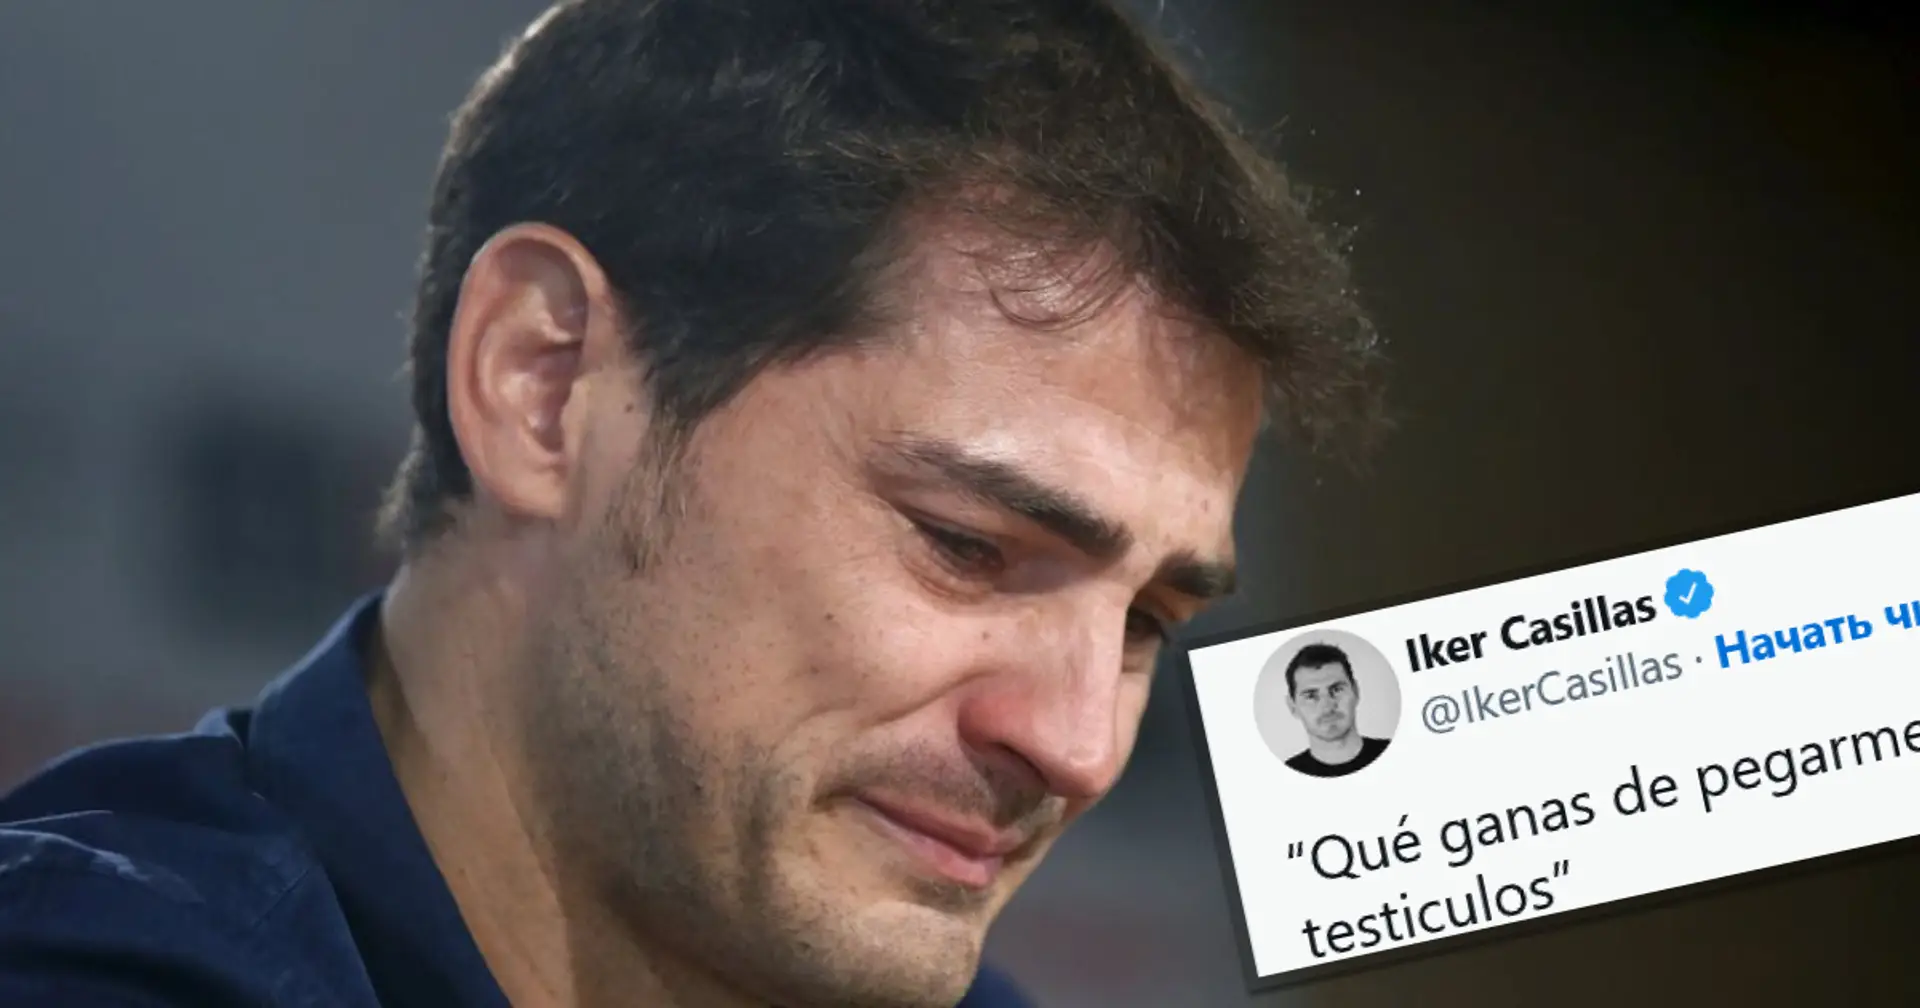 Iker Casillas on Twitter: 'Qué ganas de pegarme siete tiros en los testículos'